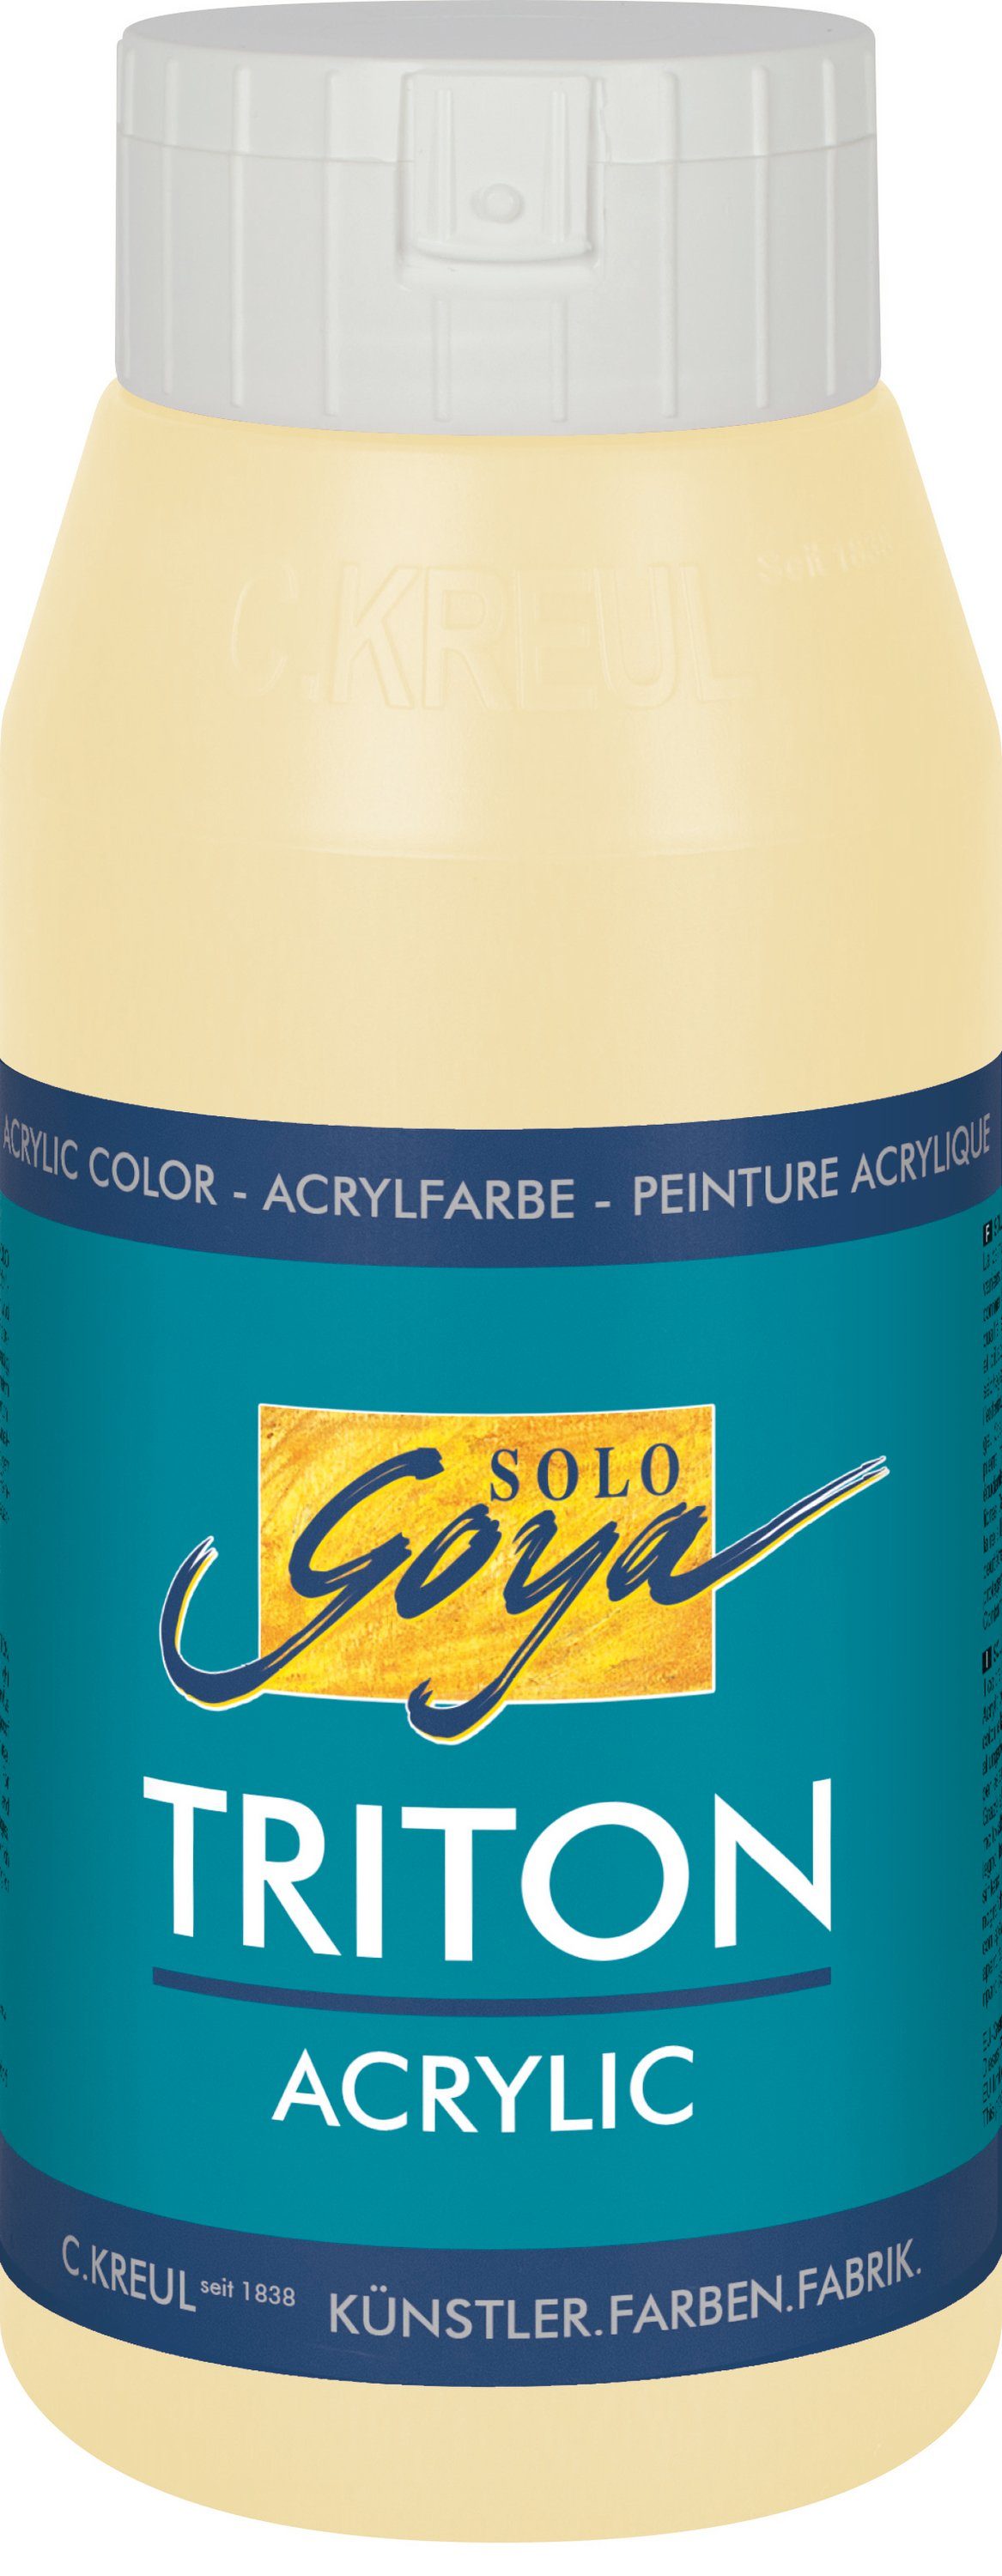 Kreul Acrylfarbe Solo 750 Goya Acrylic, Triton Beige ml